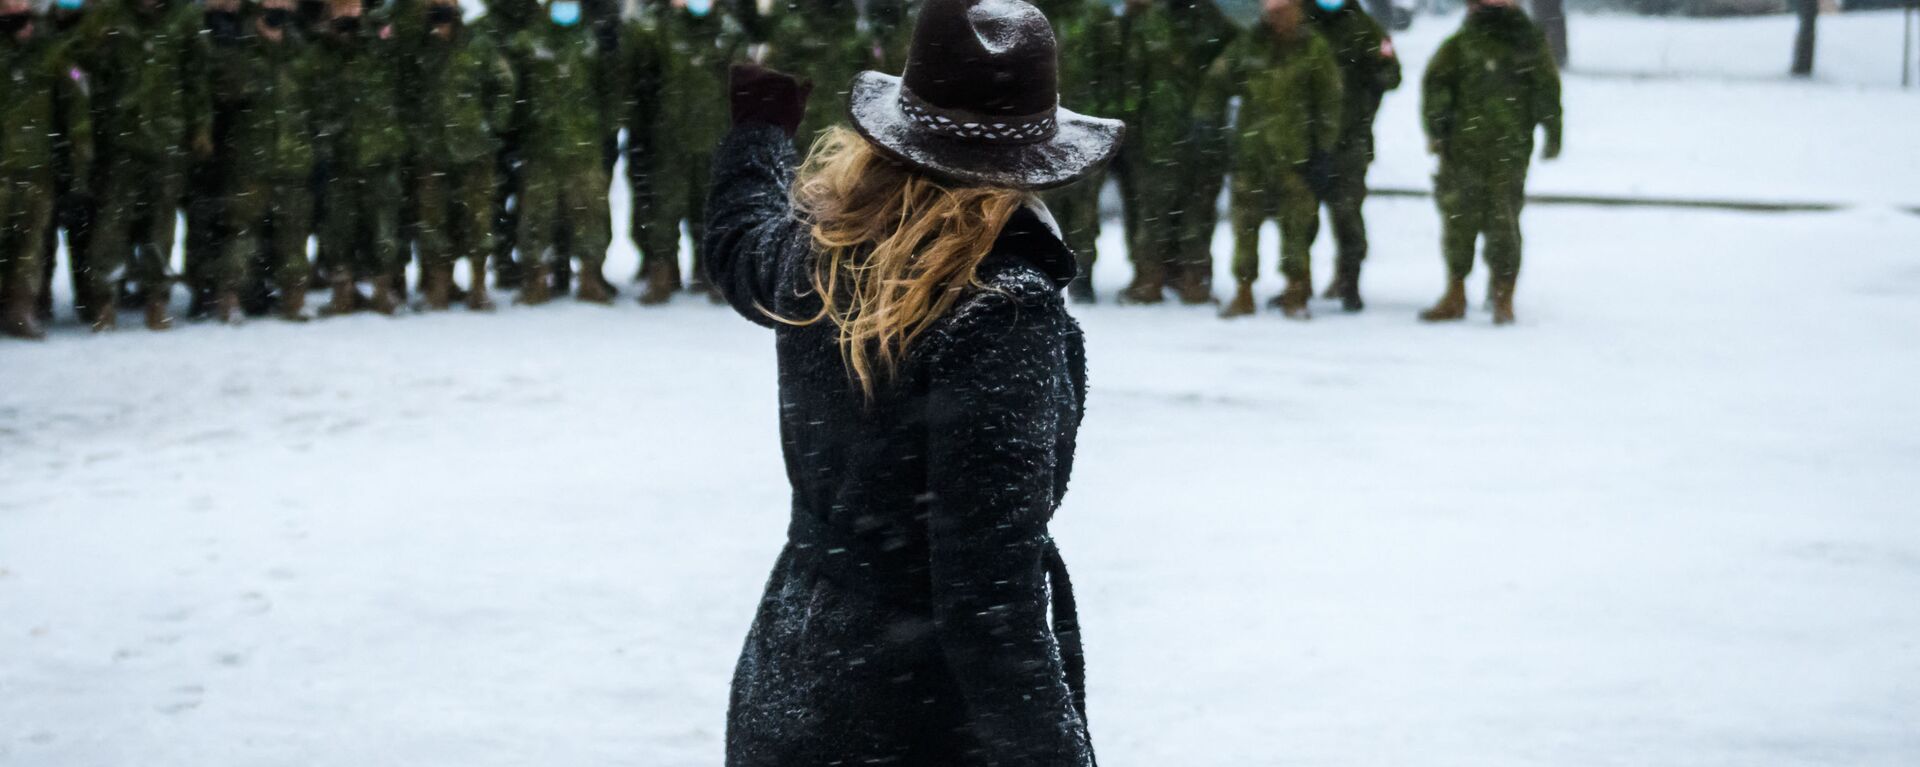 29 نوفمبر/ تشرين الثاني 2021 - ميلاني جولي، وزيرة خارجية كندا تغادر بعد اجتماع مع القوات العسكرية الكندية في قاعدة ادازي (Adazi) العسكرية في لاتفيا. - سبوتنيك عربي, 1920, 16.05.2022